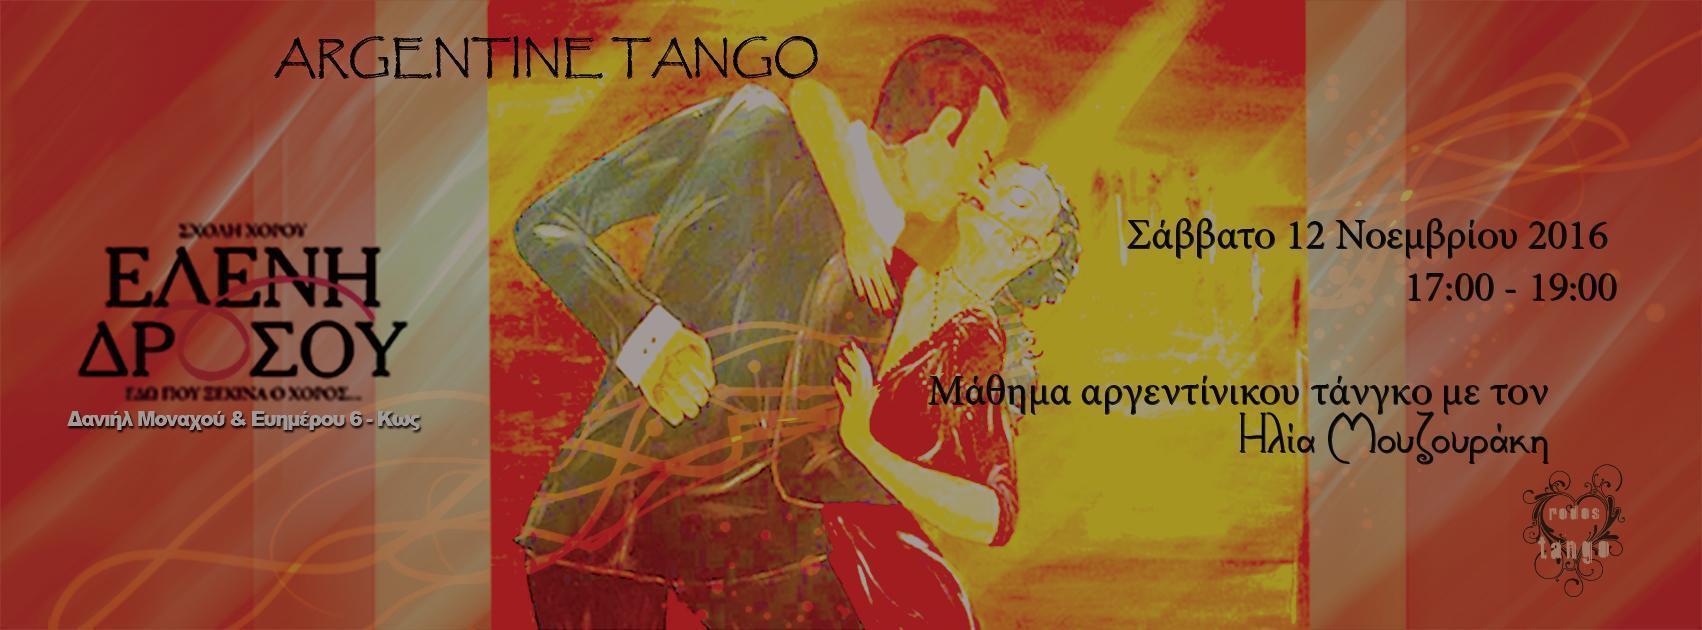 Tango Μαθημα Κως y Rodostango.com